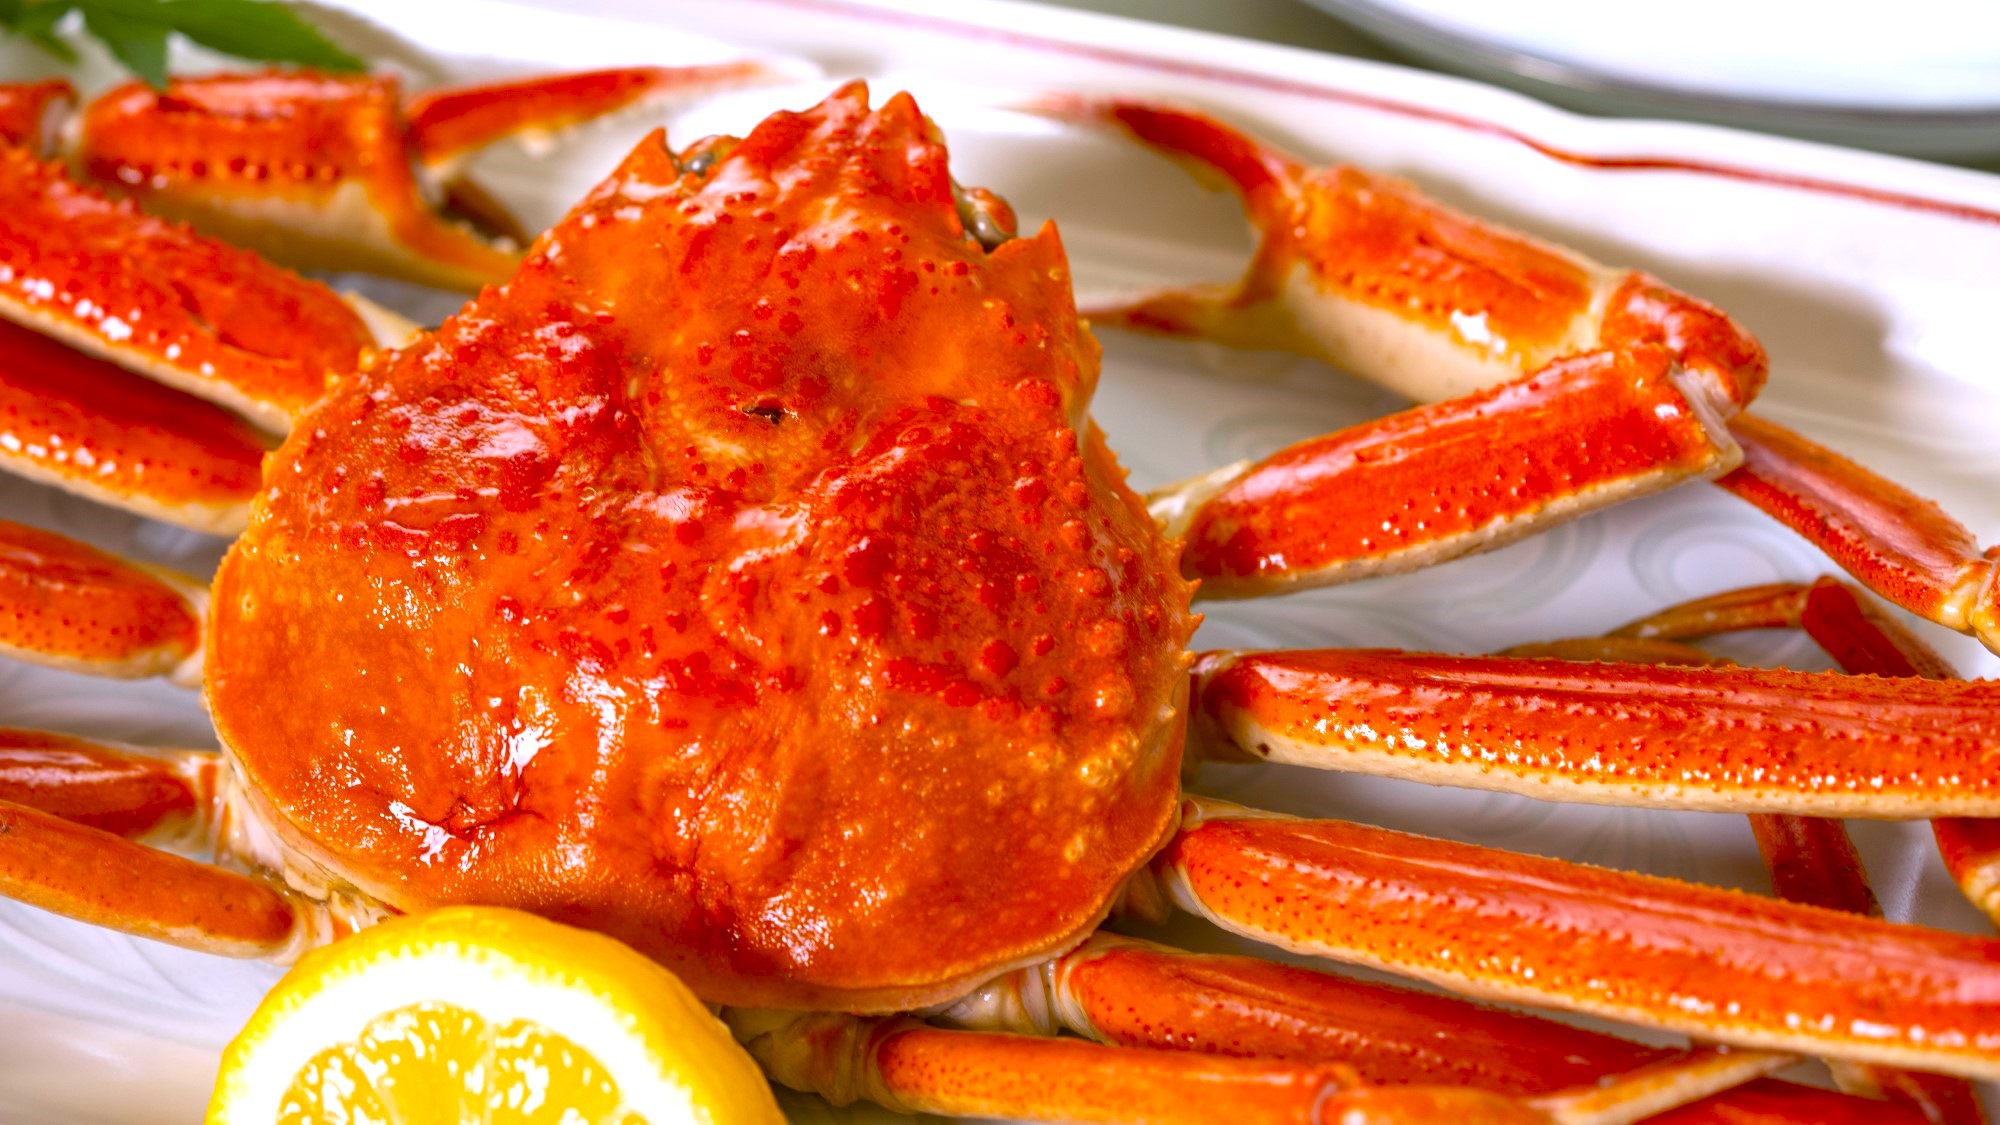 【食事処】冬の味覚を贅沢に味わう♪姿ズワイ蟹1杯と蟹鍋と〆の雑炊で大満足♪